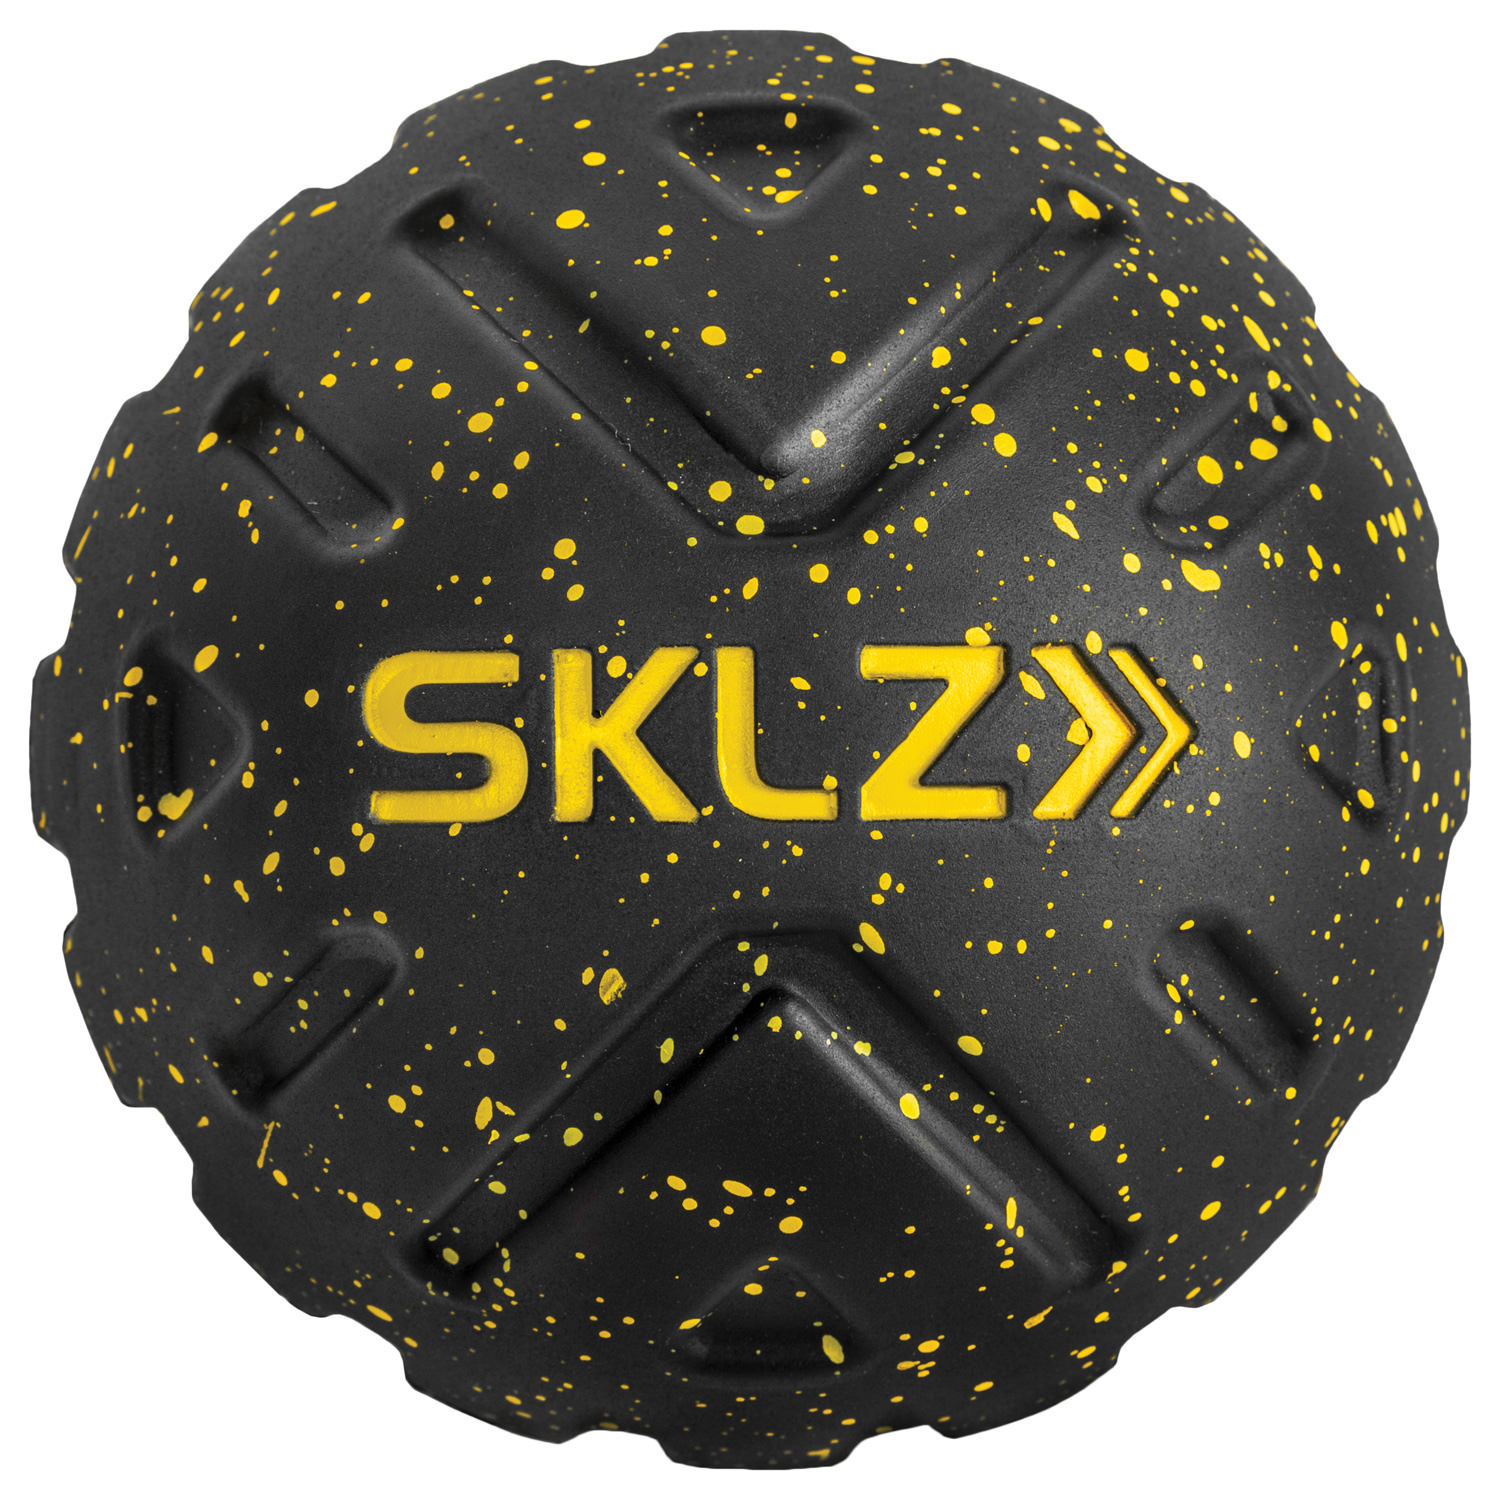 TARGETED MASSAGE BALL ｜ SKLZ - training gear brand from USA